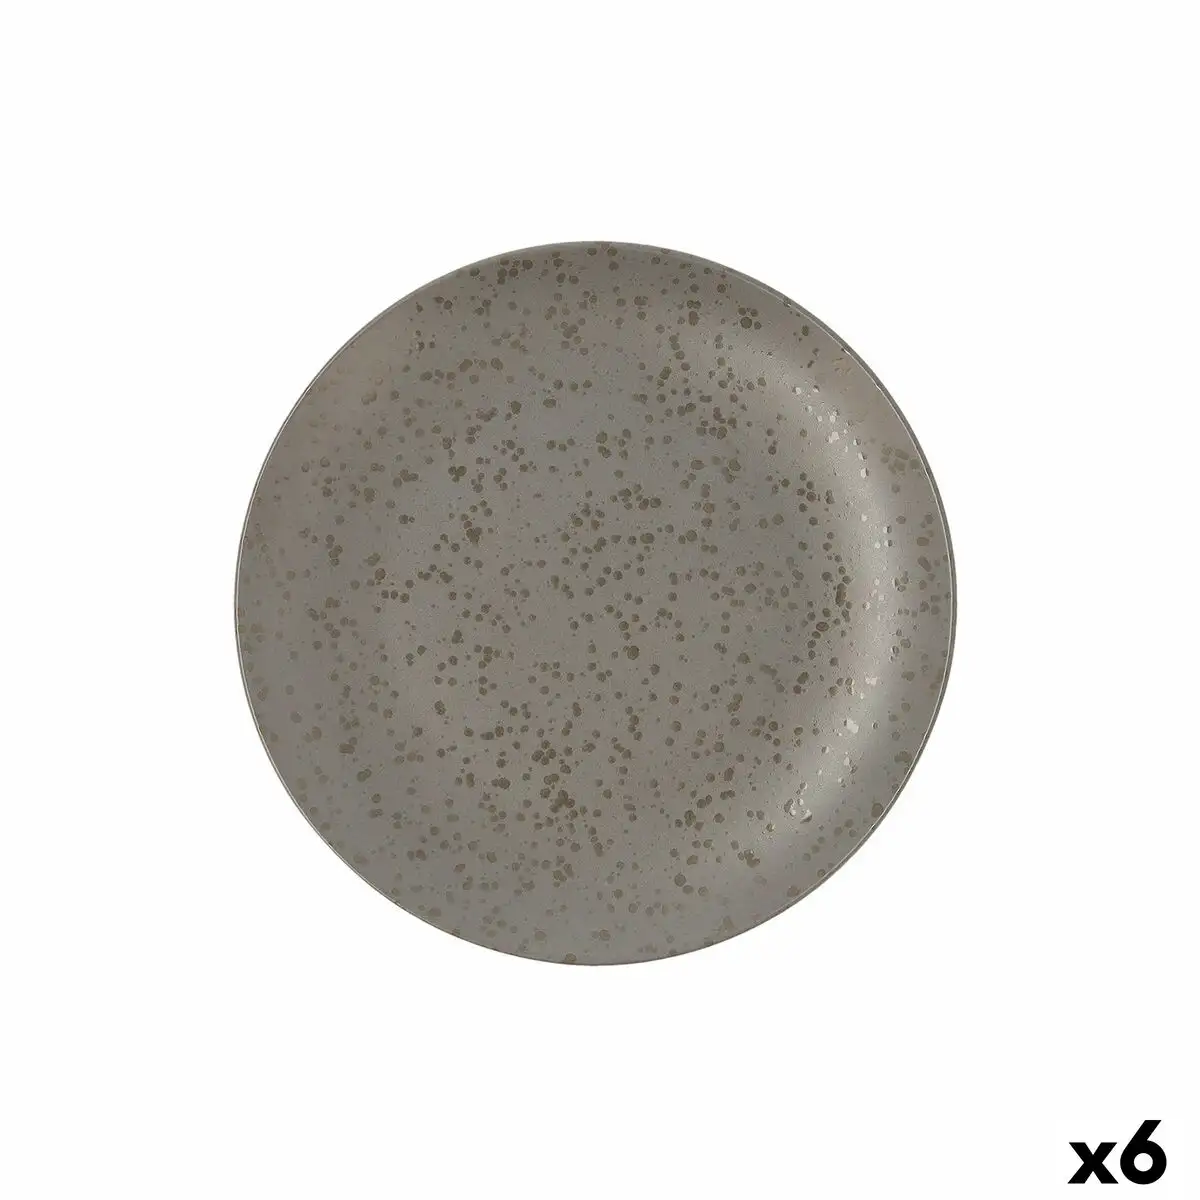 Assiette plate ariane oxide ceramique gris o 24 cm 6 unites _6513. DIAYTAR SENEGAL - Votre Source de Découvertes Shopping. Naviguez à travers nos catégories et découvrez des articles qui vous surprendront et vous séduiront.